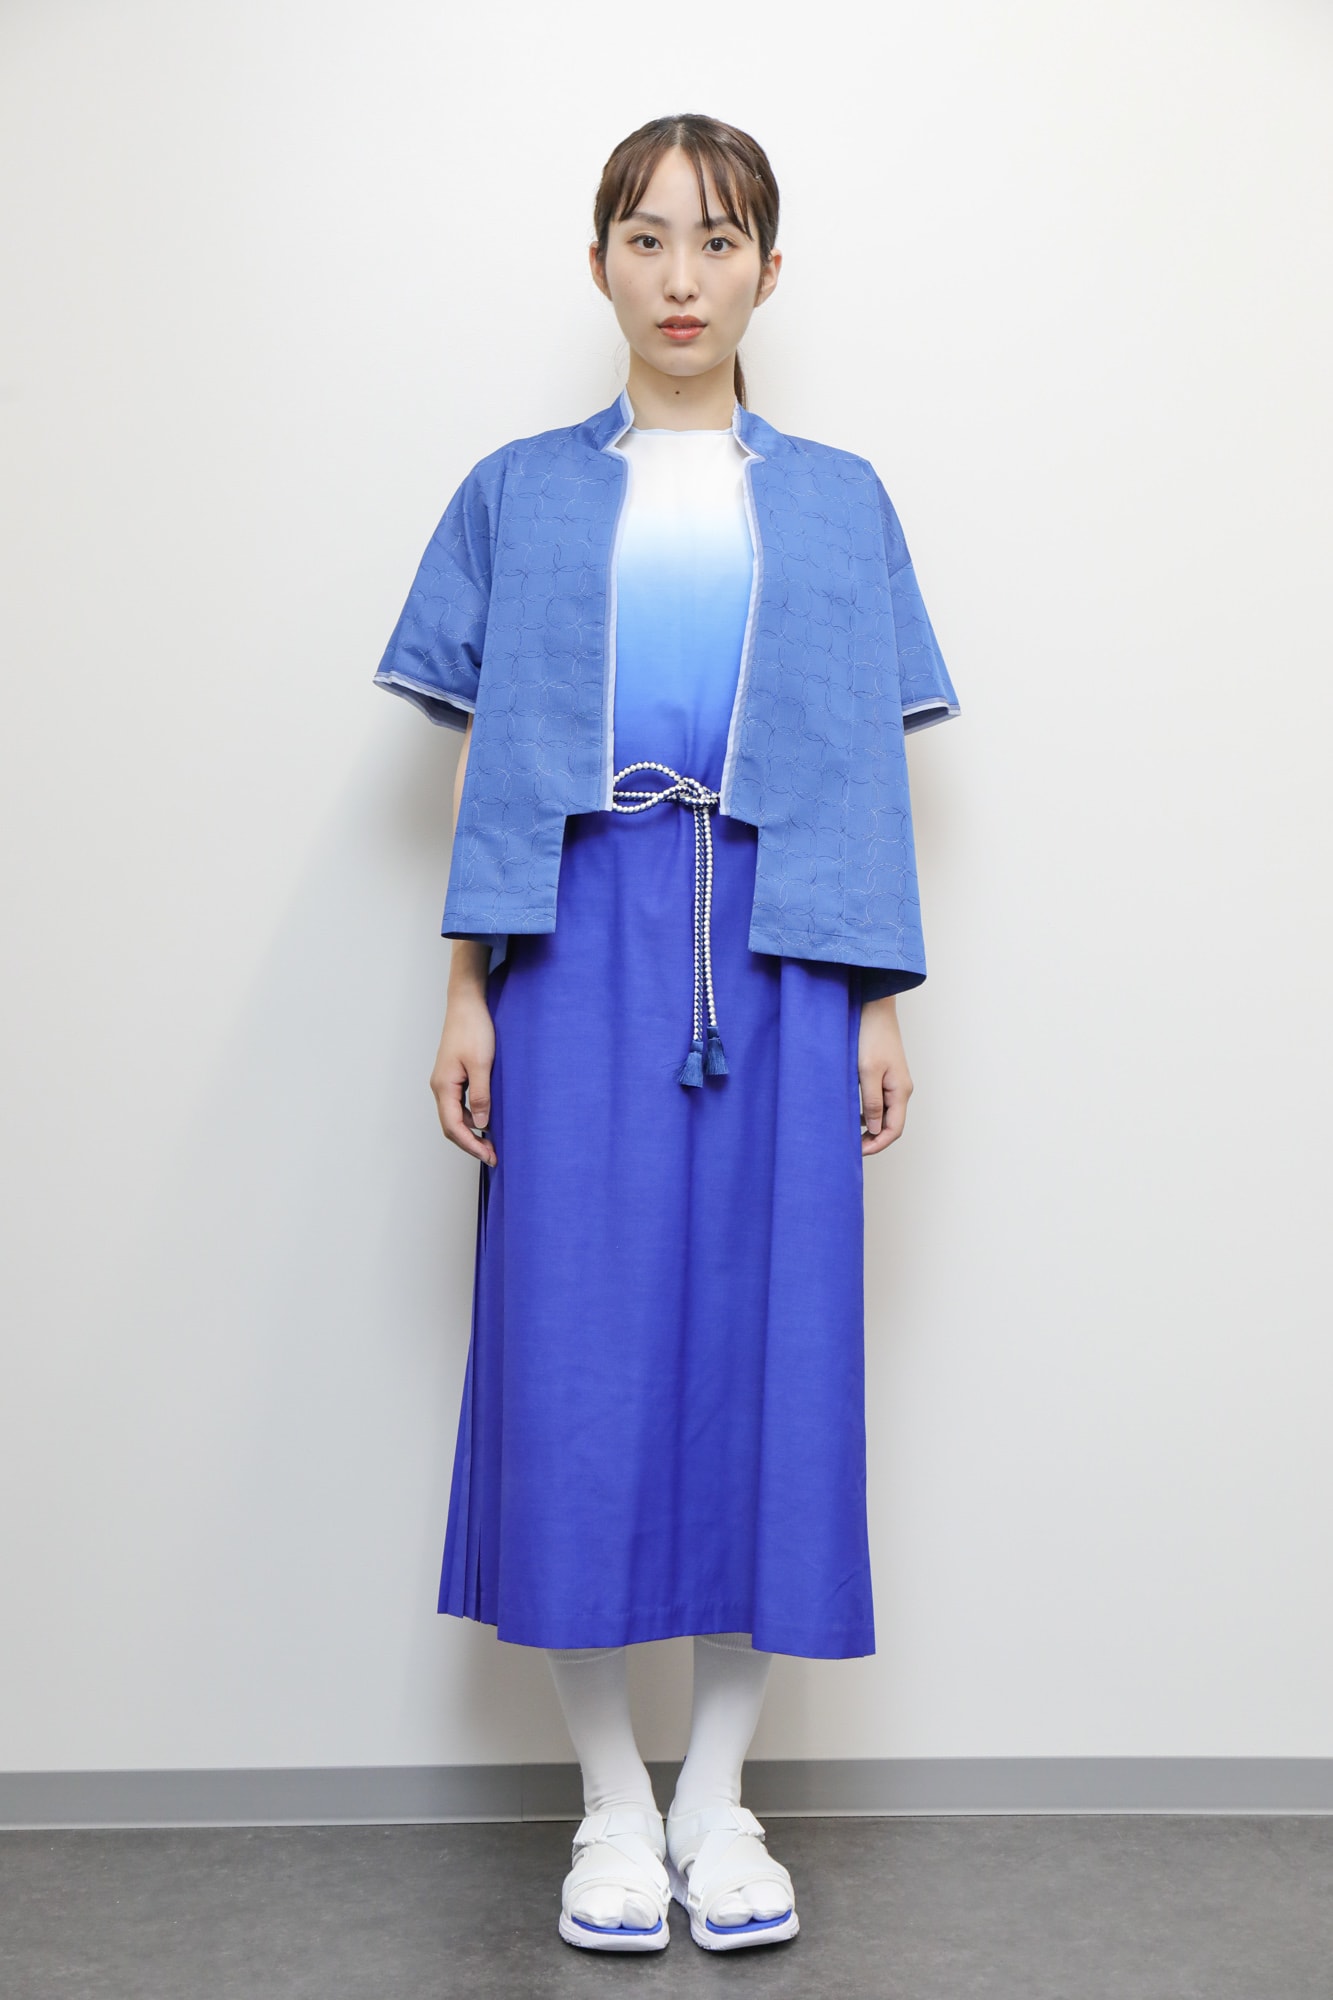 表彰式で使用される衣装 Image by Tokyo 2020